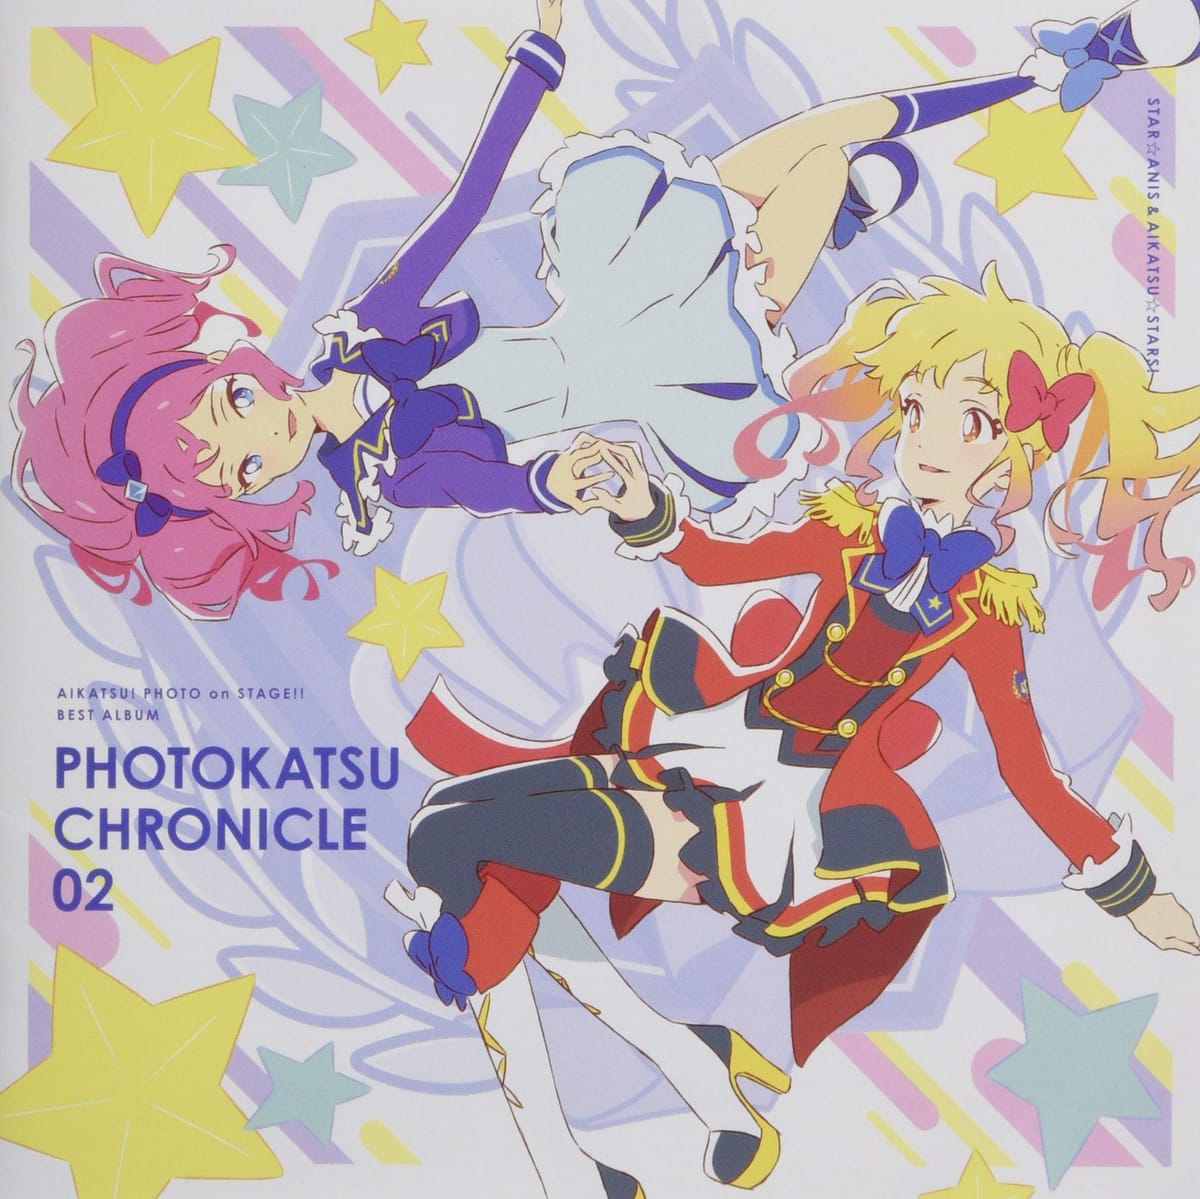 アイカツ スマホアプリ『アイカツ! フォトonステージ! ! 』ベストアルバム PHOTOKATSU CHRONICLE 02